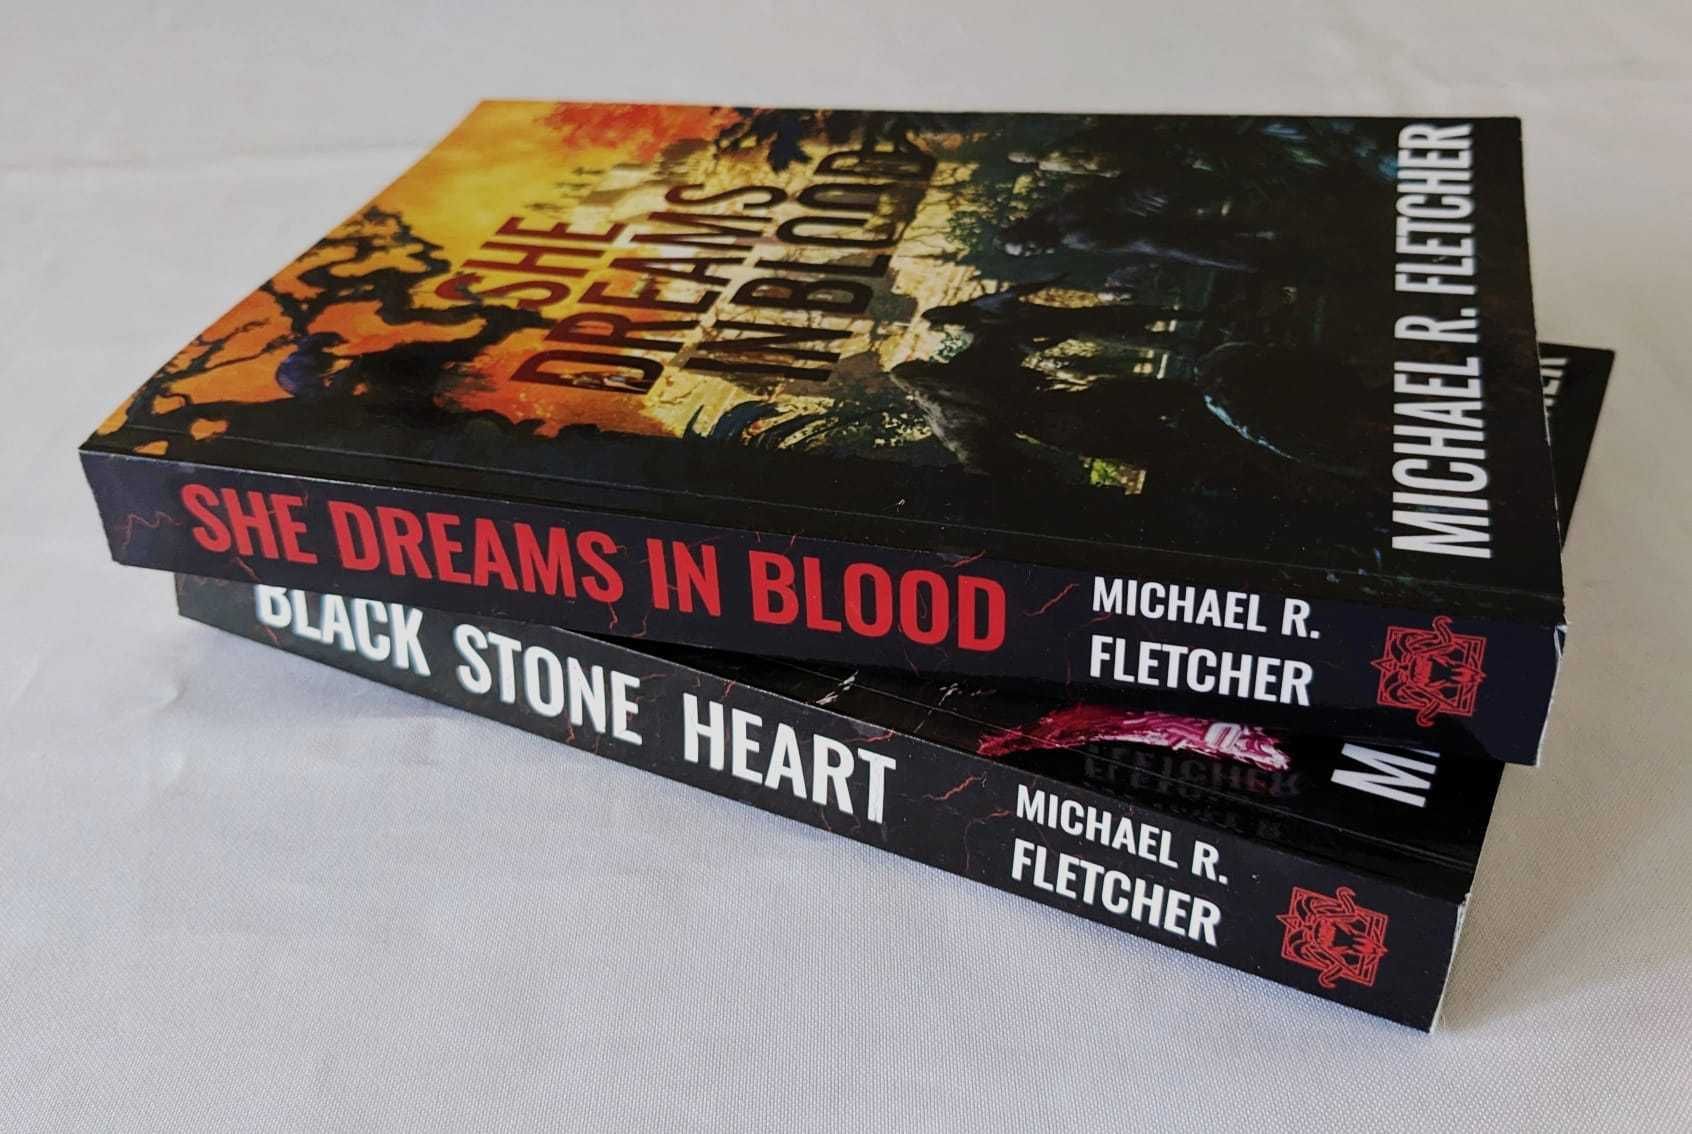 Michael R. Fletcher - Black Stone Heart + She Dreams in Blood